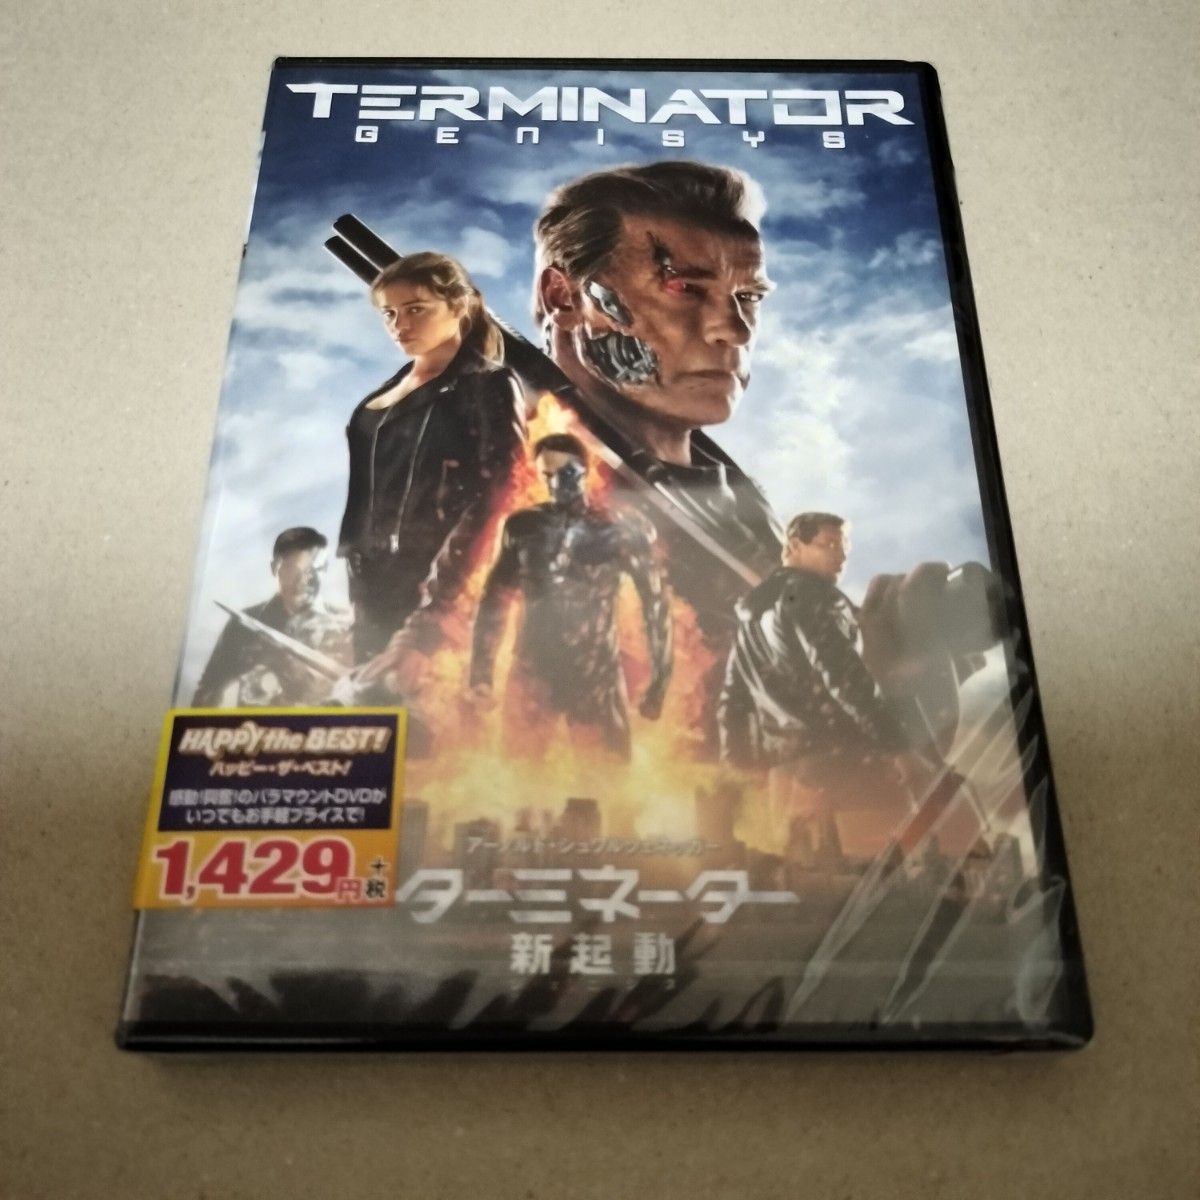 ターミネーター DVD 新起動 ジェニシス + ニューフェイト 2作品セット